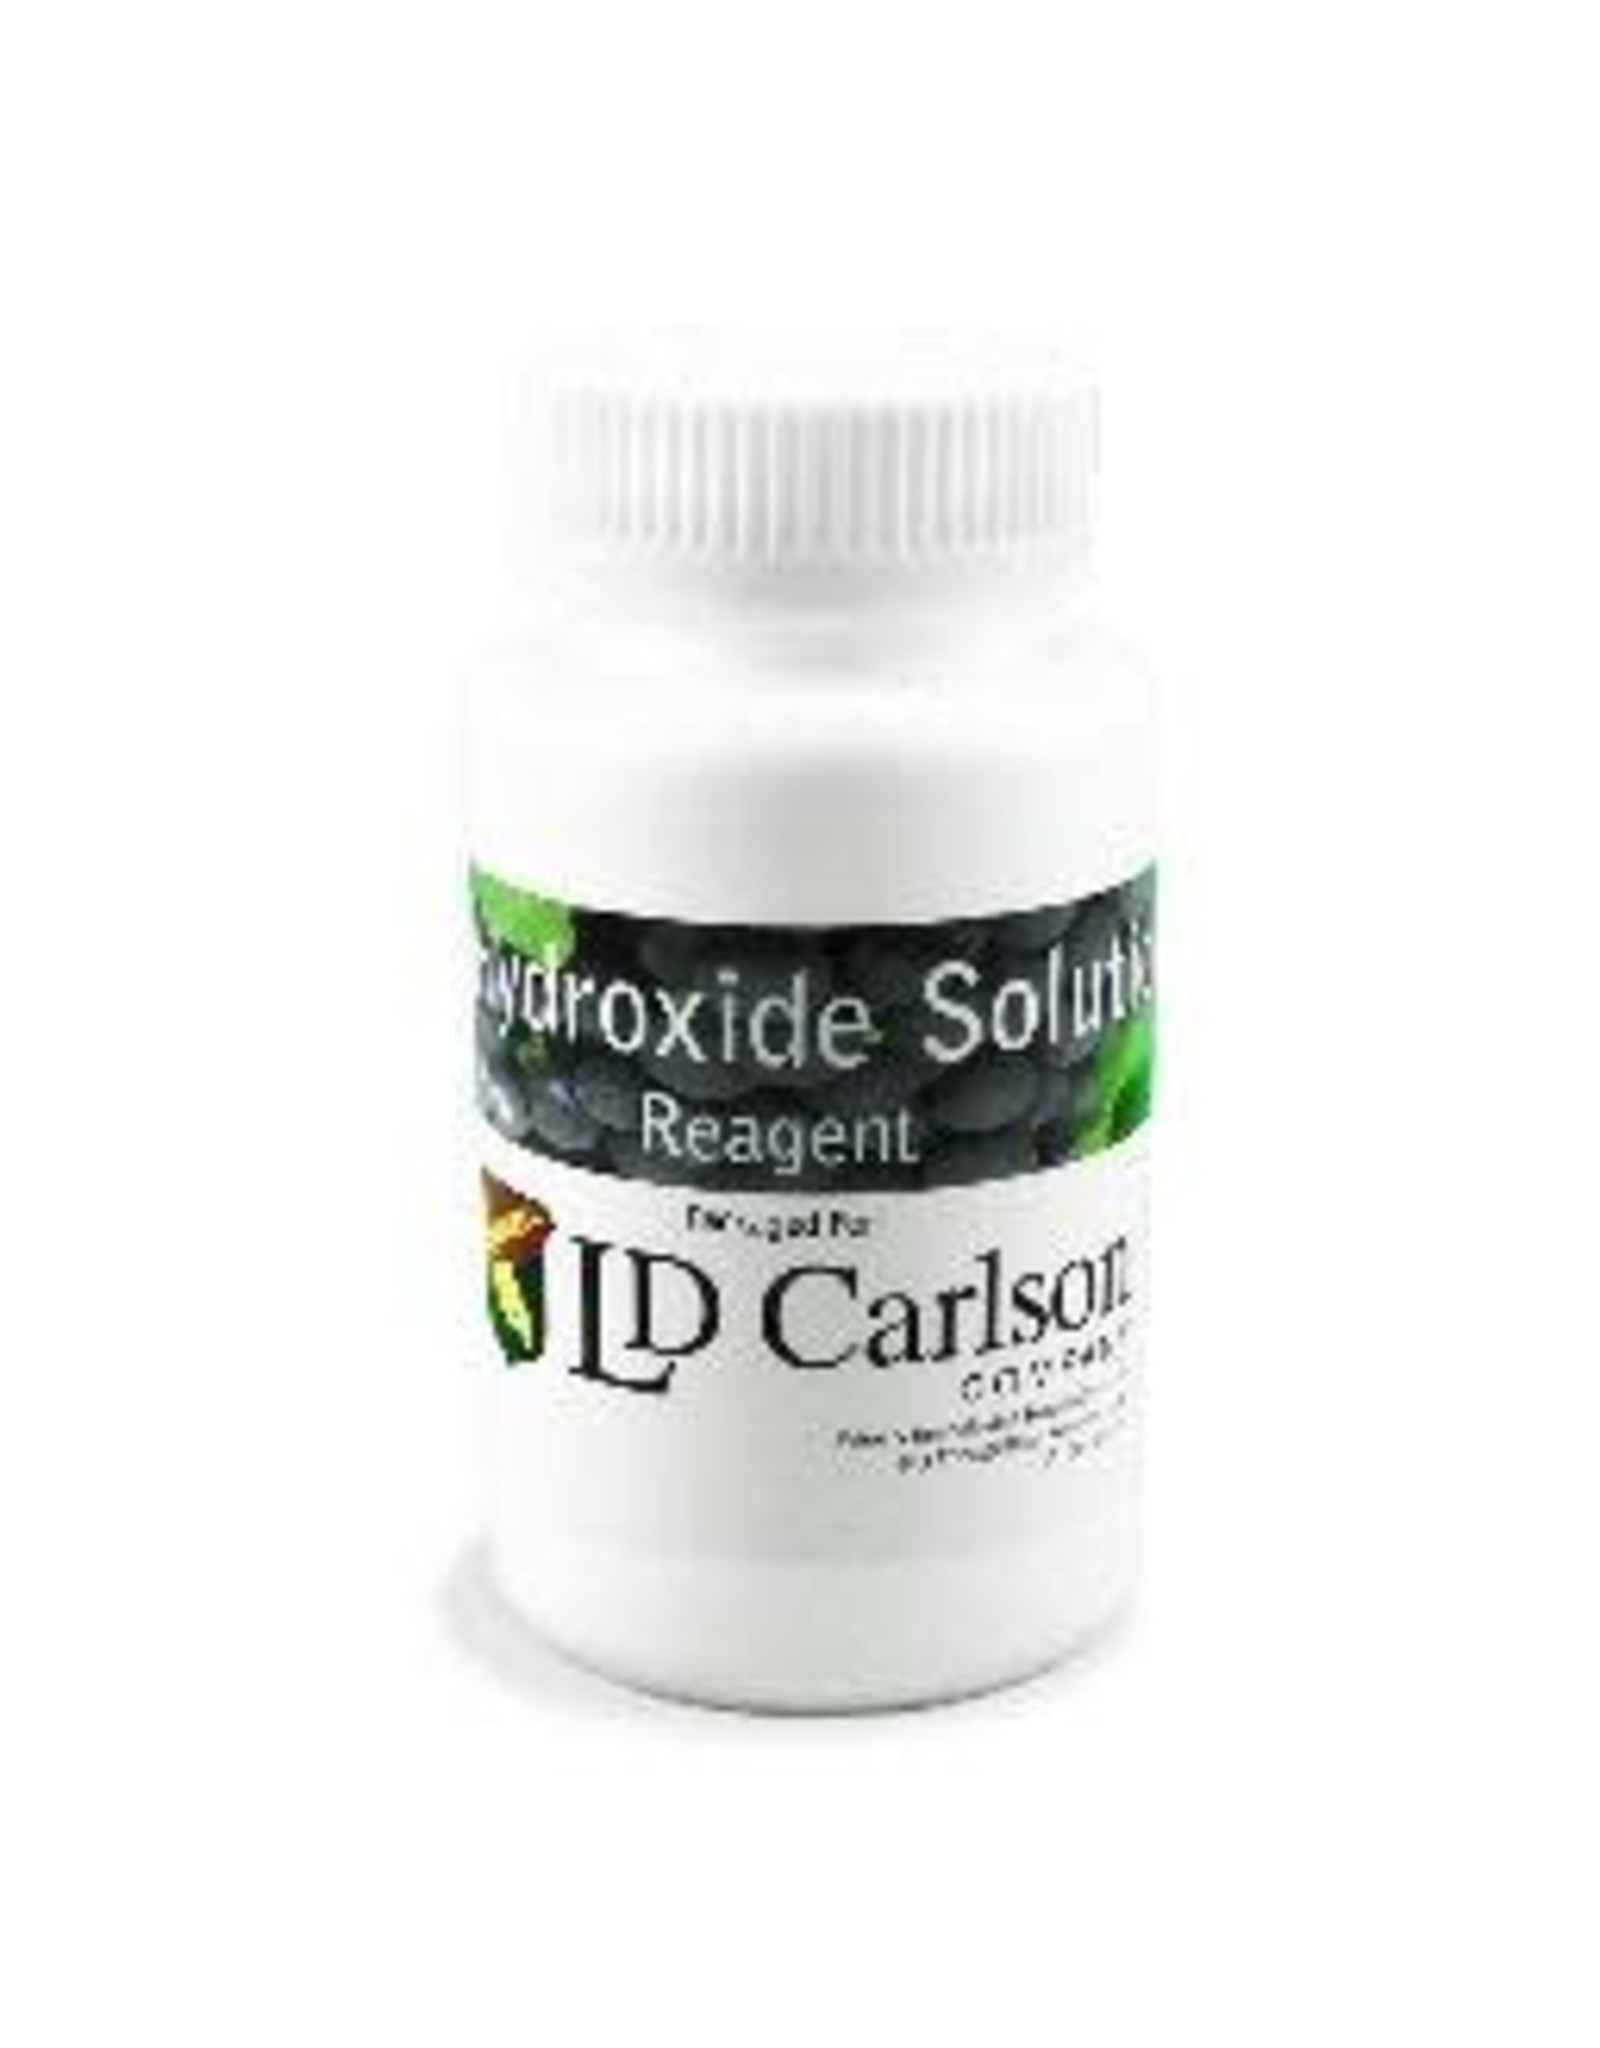 Sodium Hydroxide Solution 0.2N 4 oz